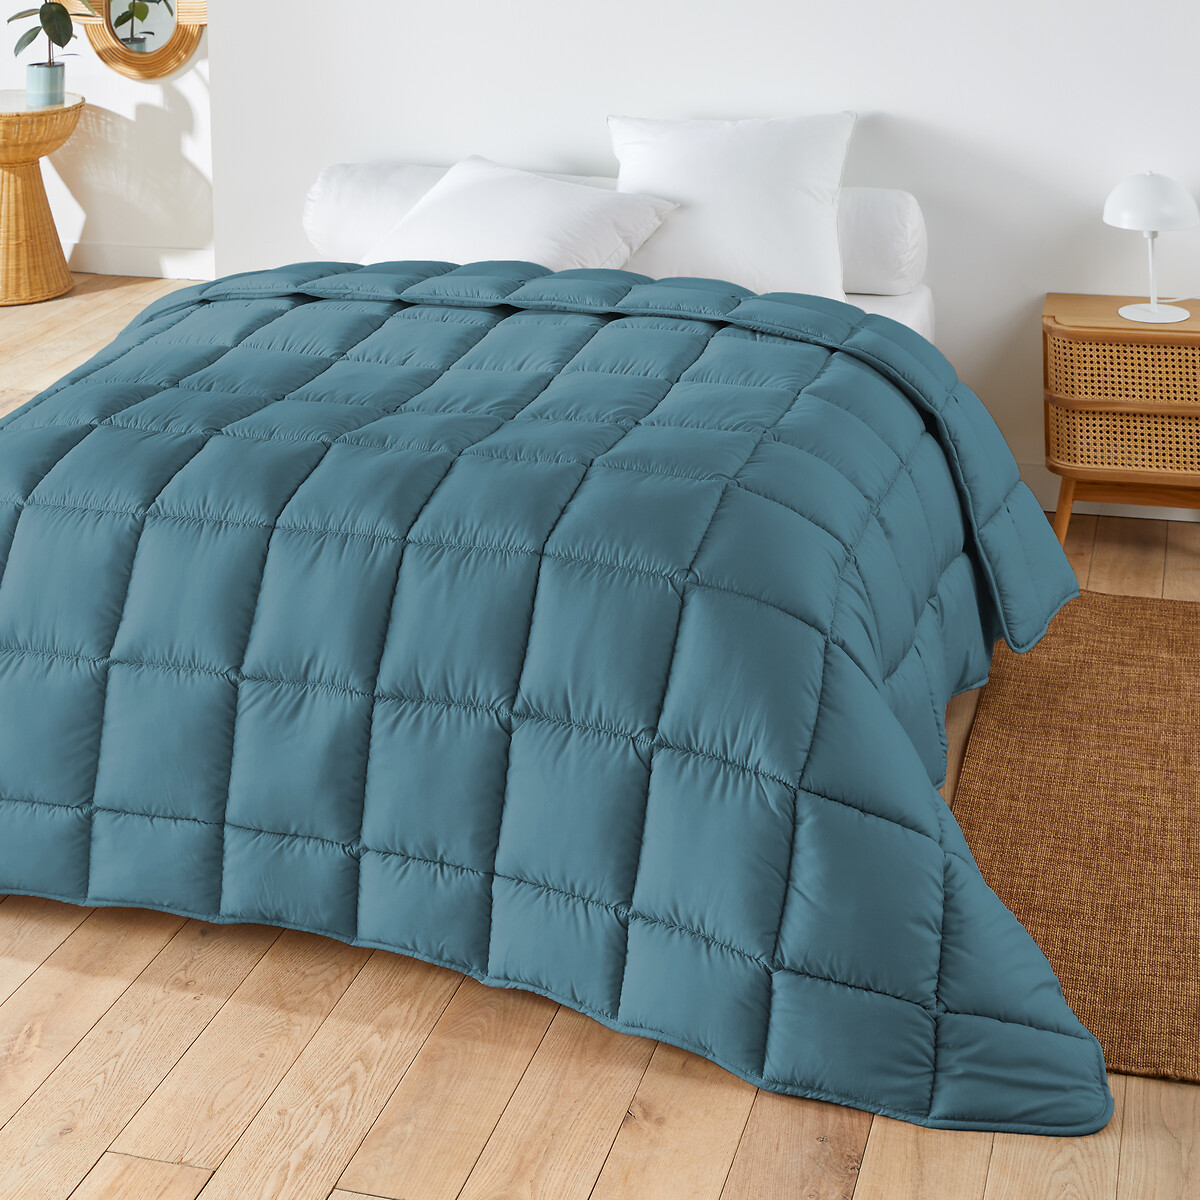 Одеяло яркое из синтетической ткани для прохладного помещения  240 x 220 см синий LaRedoute, размер 240 x 220 см - фото 1